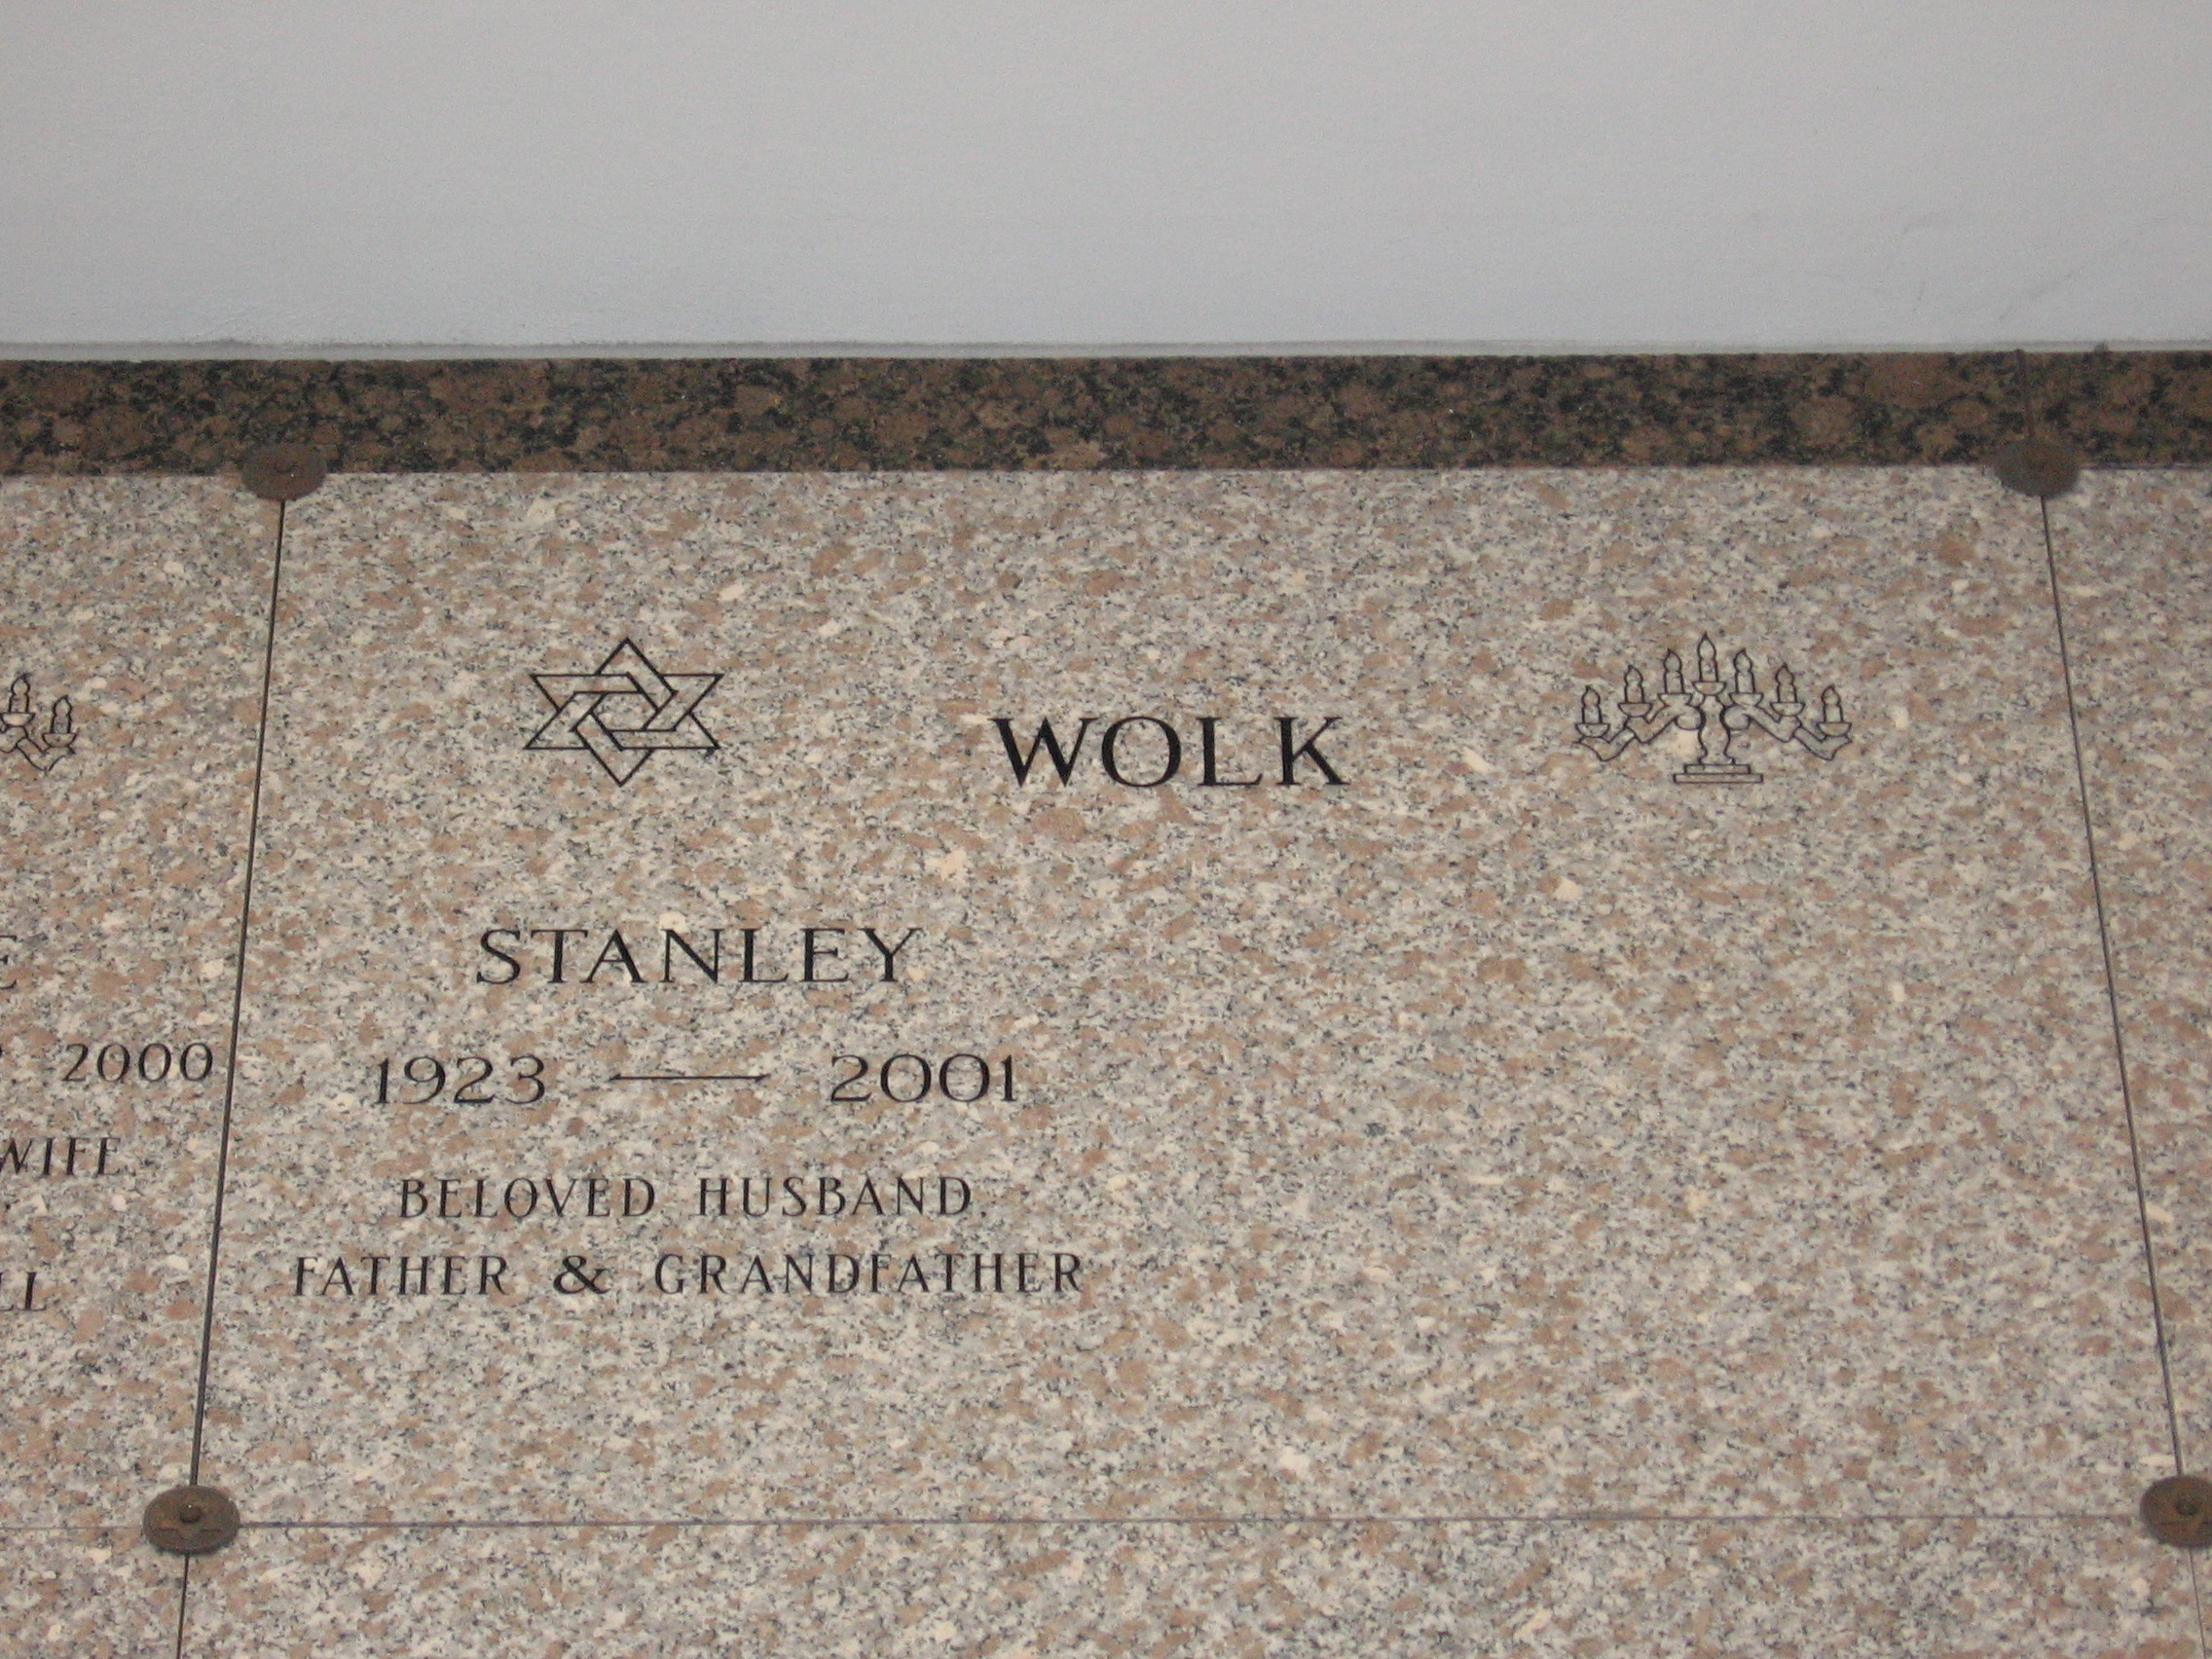 Stanley Wolk